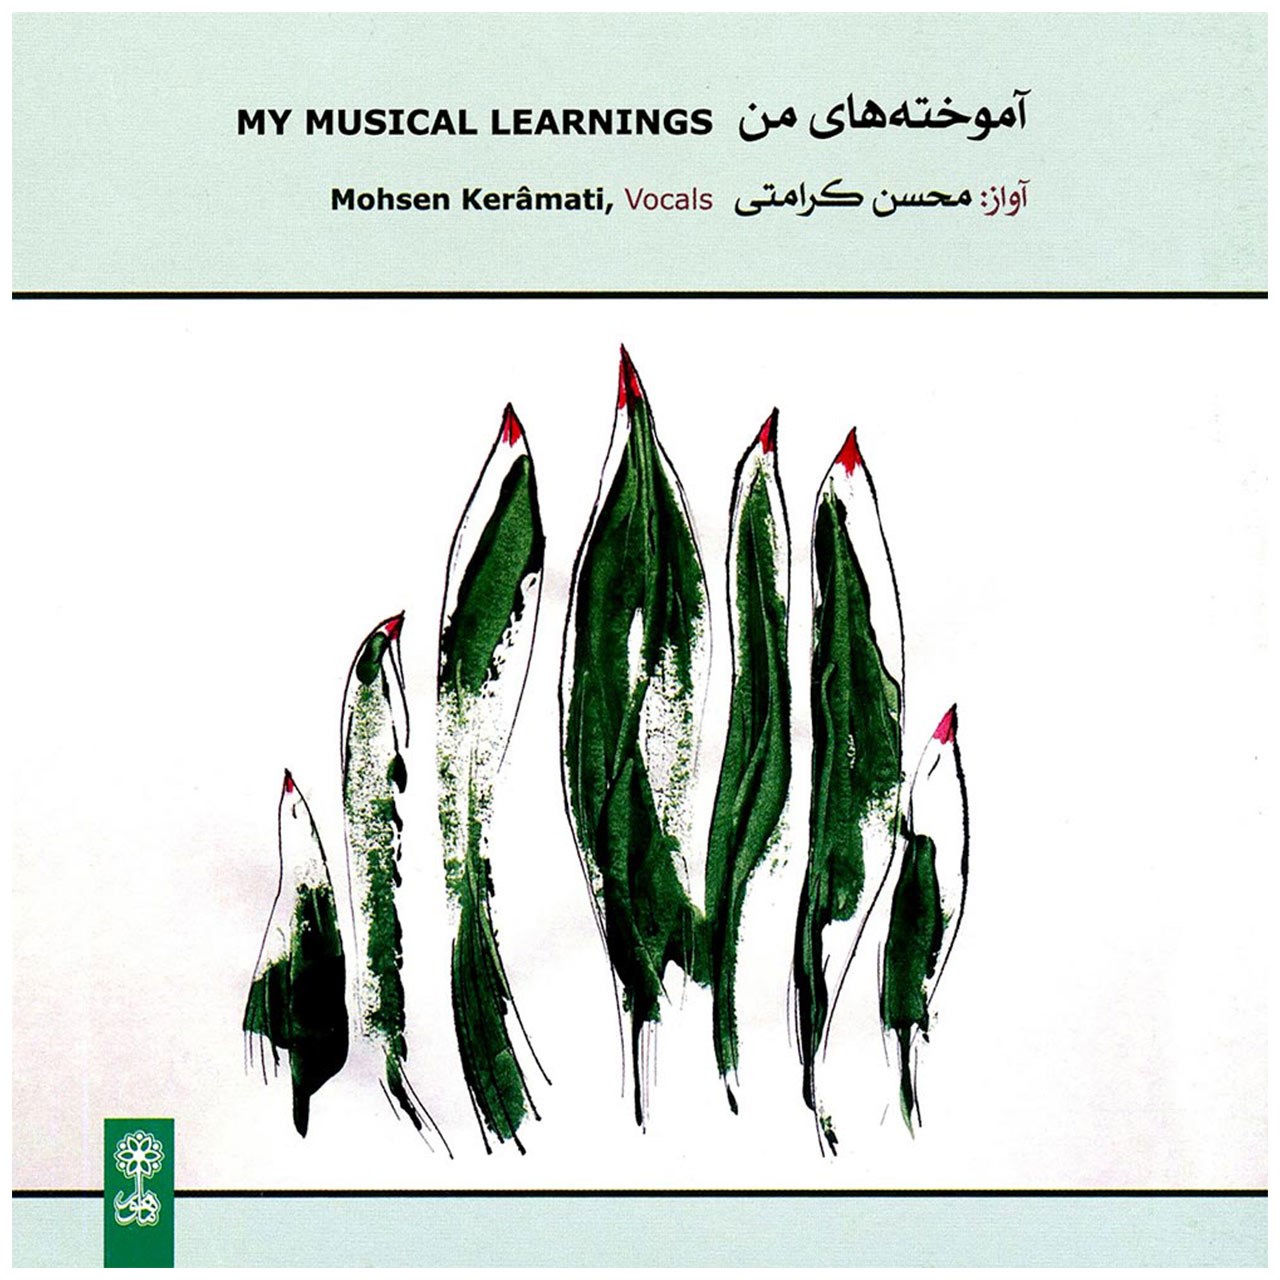 آلبوم موسیقی آموخته های من اثر محسن کرامتی